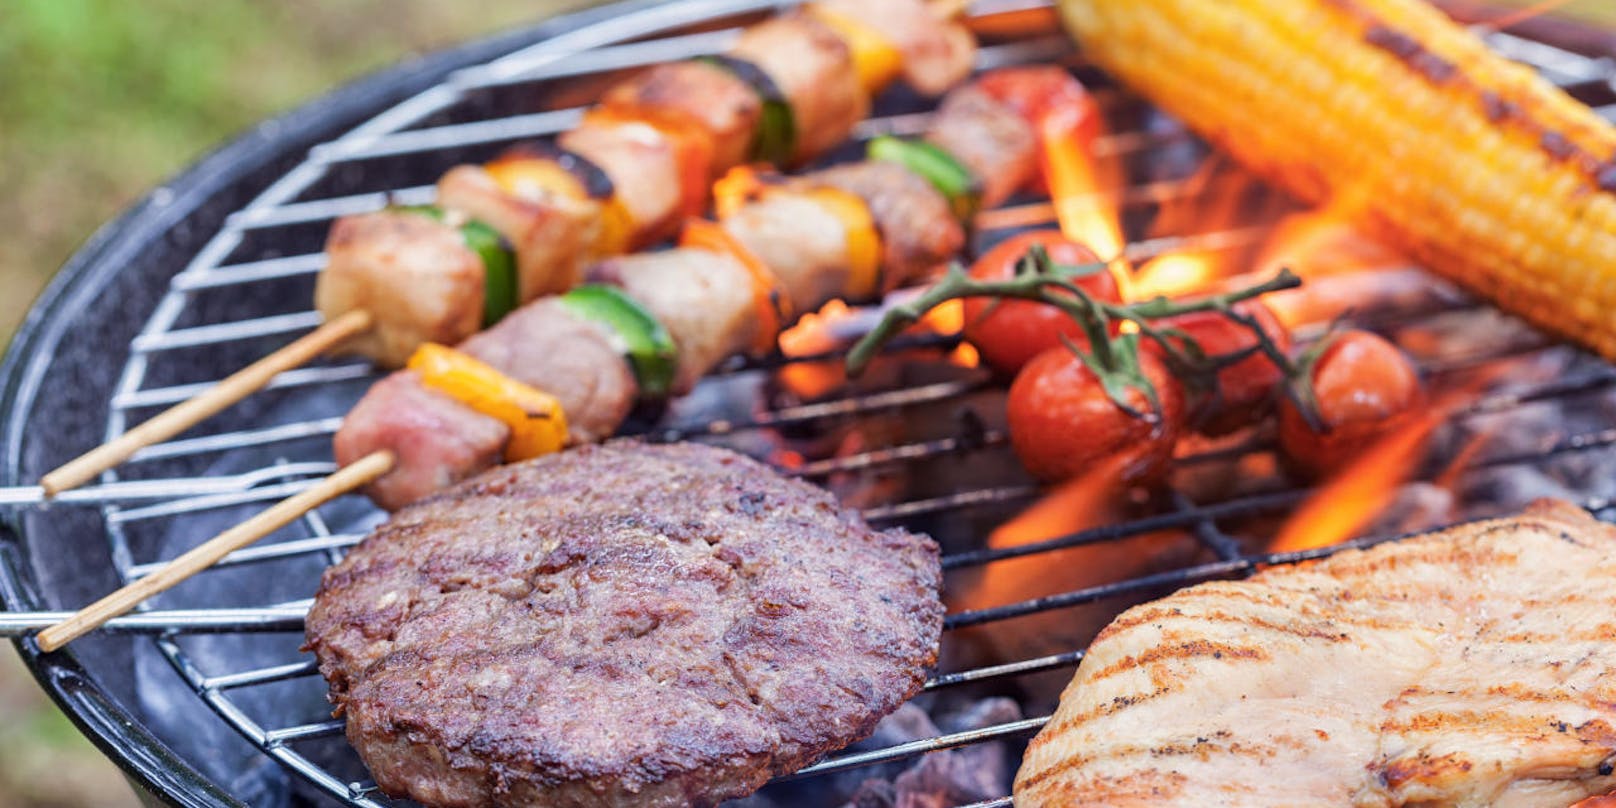 Rotes Fleisch wie Steak, Kotelett und Hack sollte mit Vorsicht verzehrt werden.